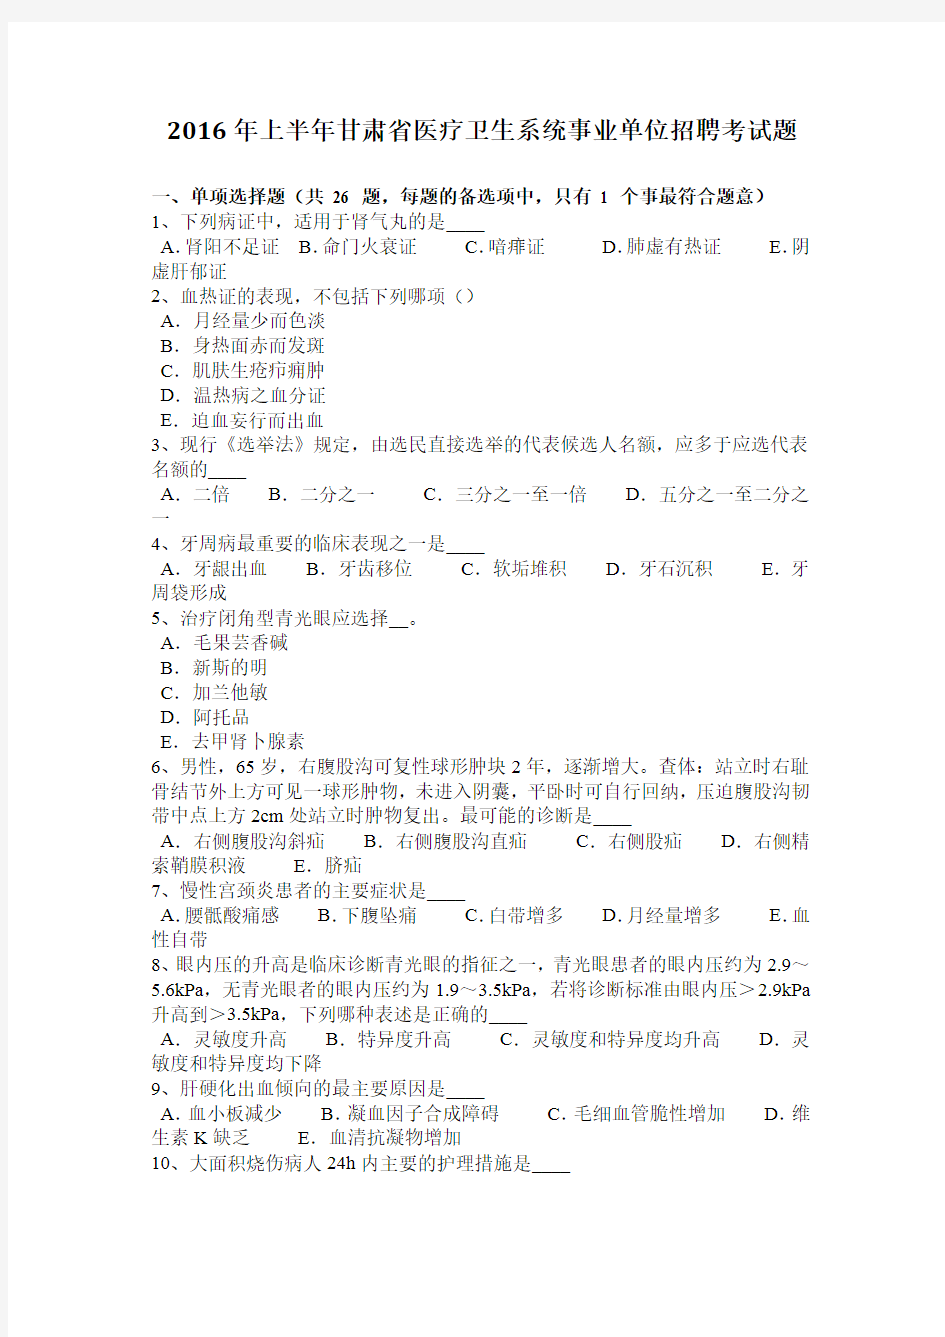 2016年上半年甘肃省医疗卫生系统事业单位招聘考试题